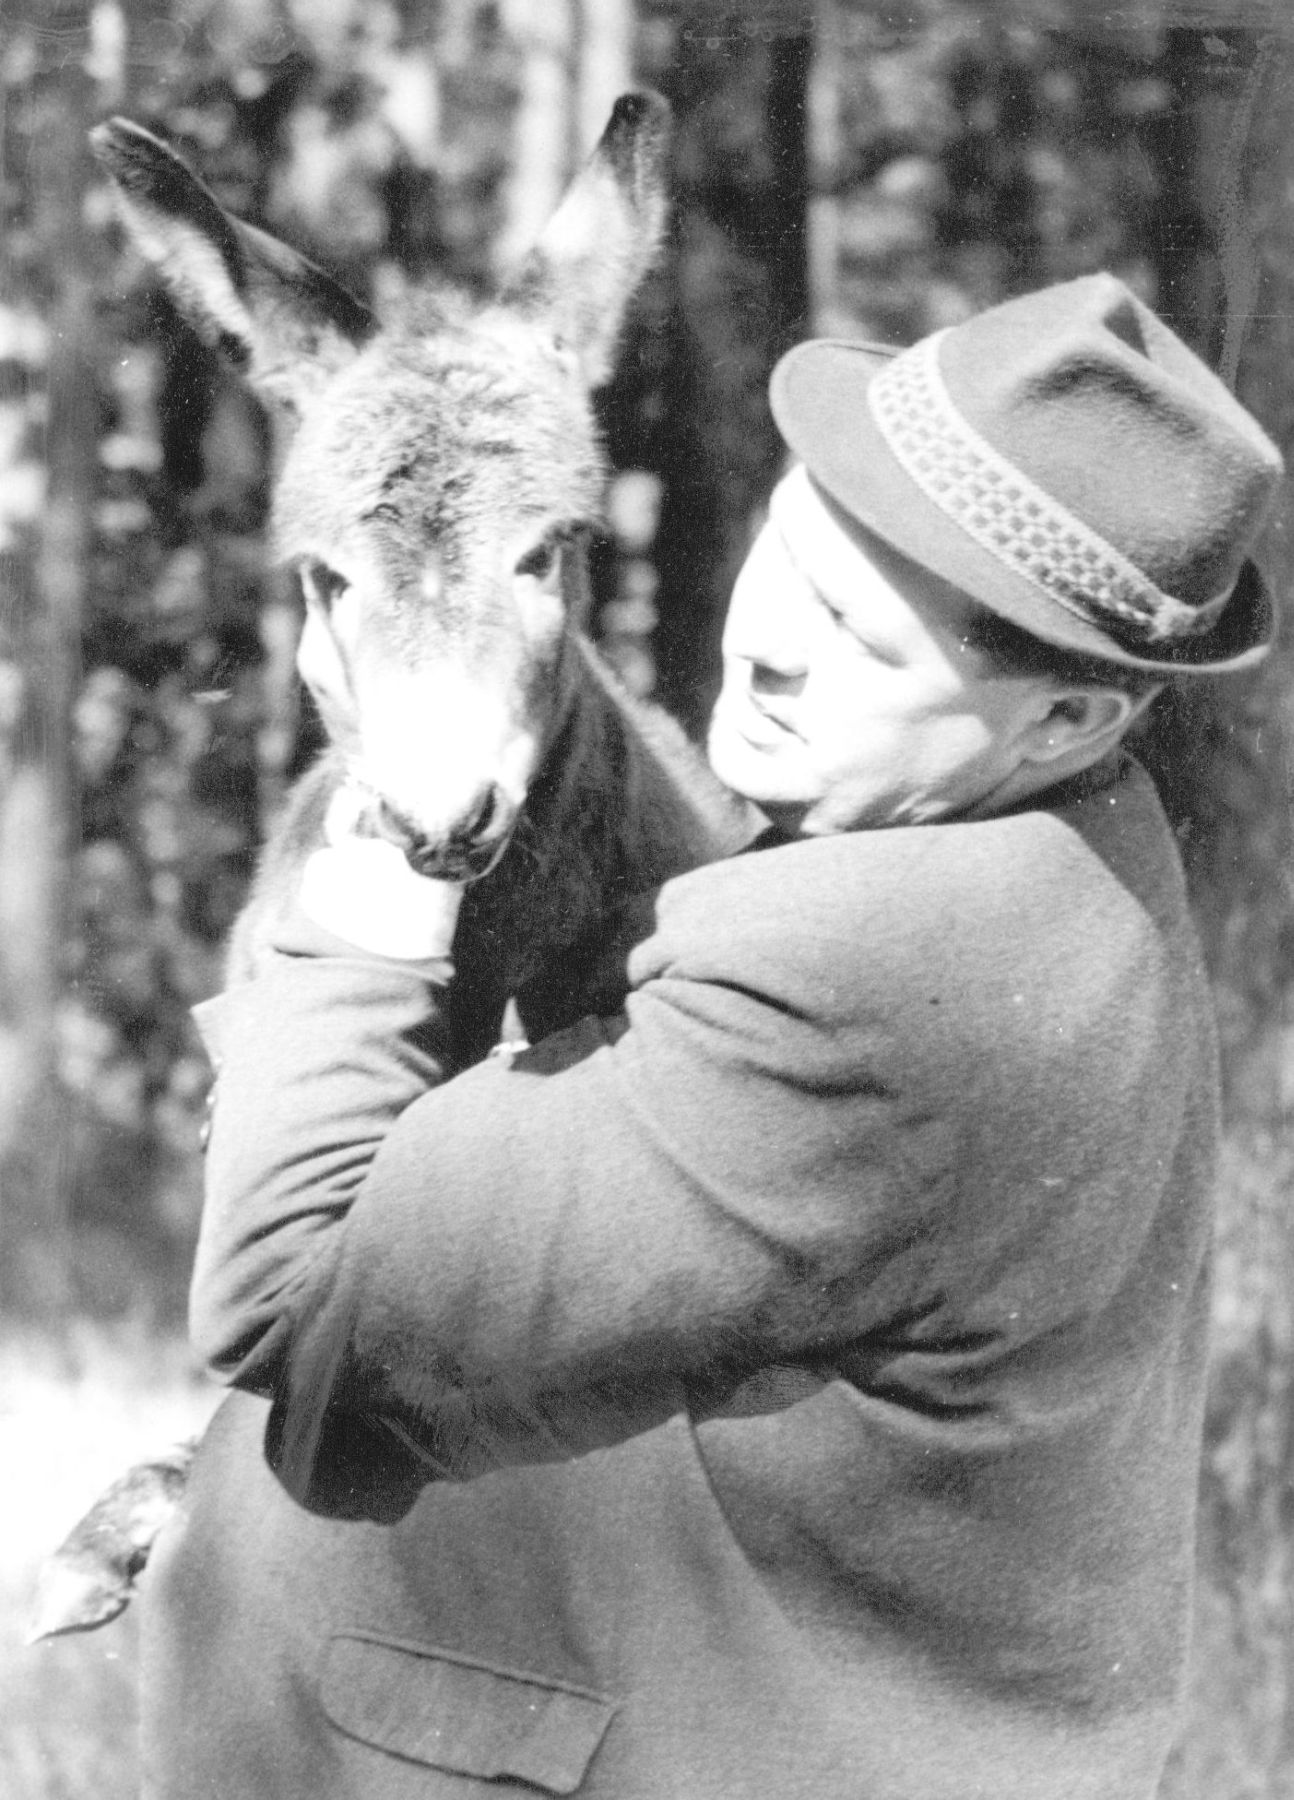 Der damaliger Gartenbaudirektor Hartmut Olejnik im Jahr 1965 hält einen Esel.